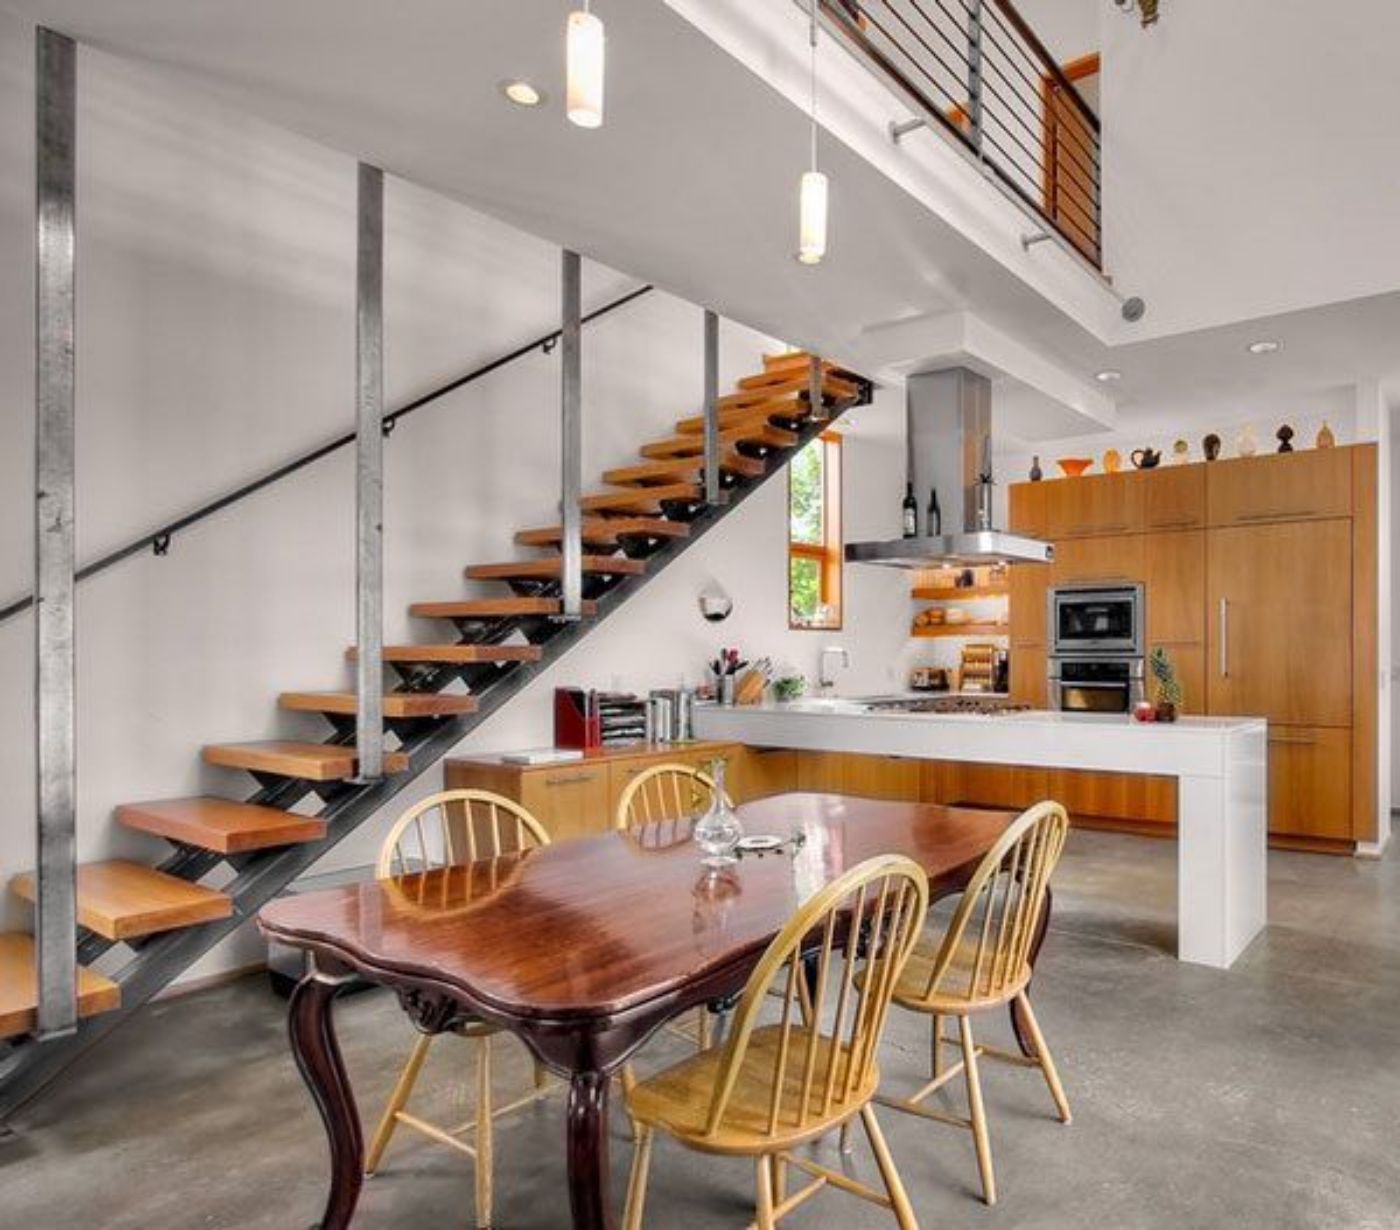 Кухни на втором этаже. Кухня под лестницей. Лестница на кухне. Кухня гостиная с лестницей. Кухня гостиная с лестницей в стиле лофт.